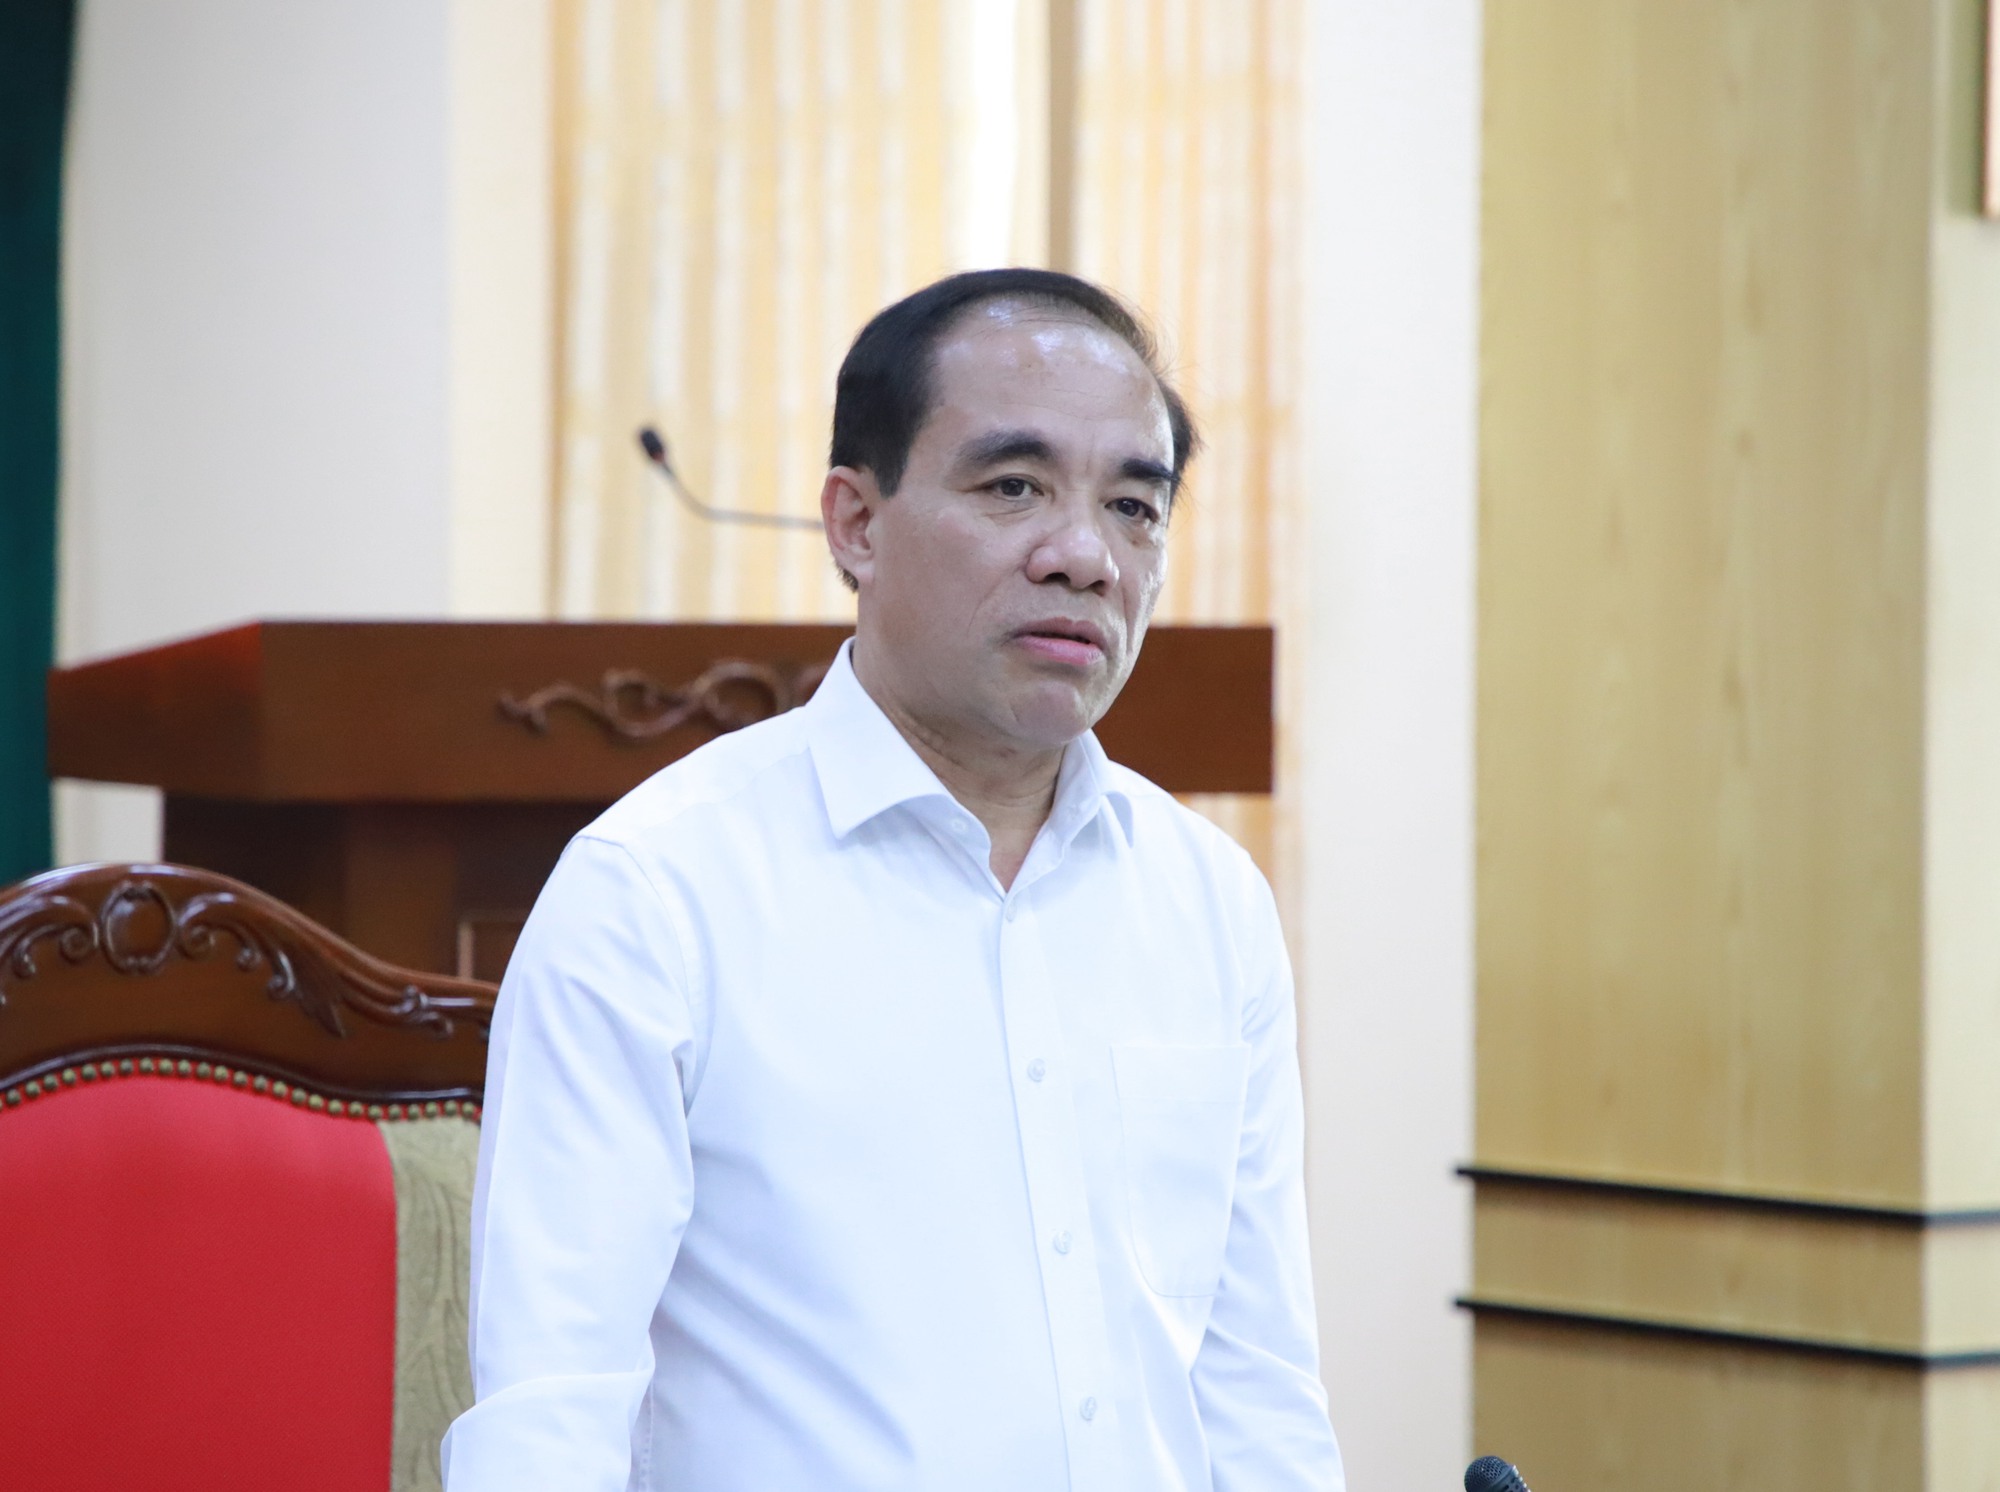 Bộ trưởng Nguyễn Văn Hùng: Giữ gìn phát huy bản sắc văn hóa dân tộc, bảo tồn tôn tạo và phát huy các di tích lịch sẽ kiến tạo sự bền vững - Ảnh 2.